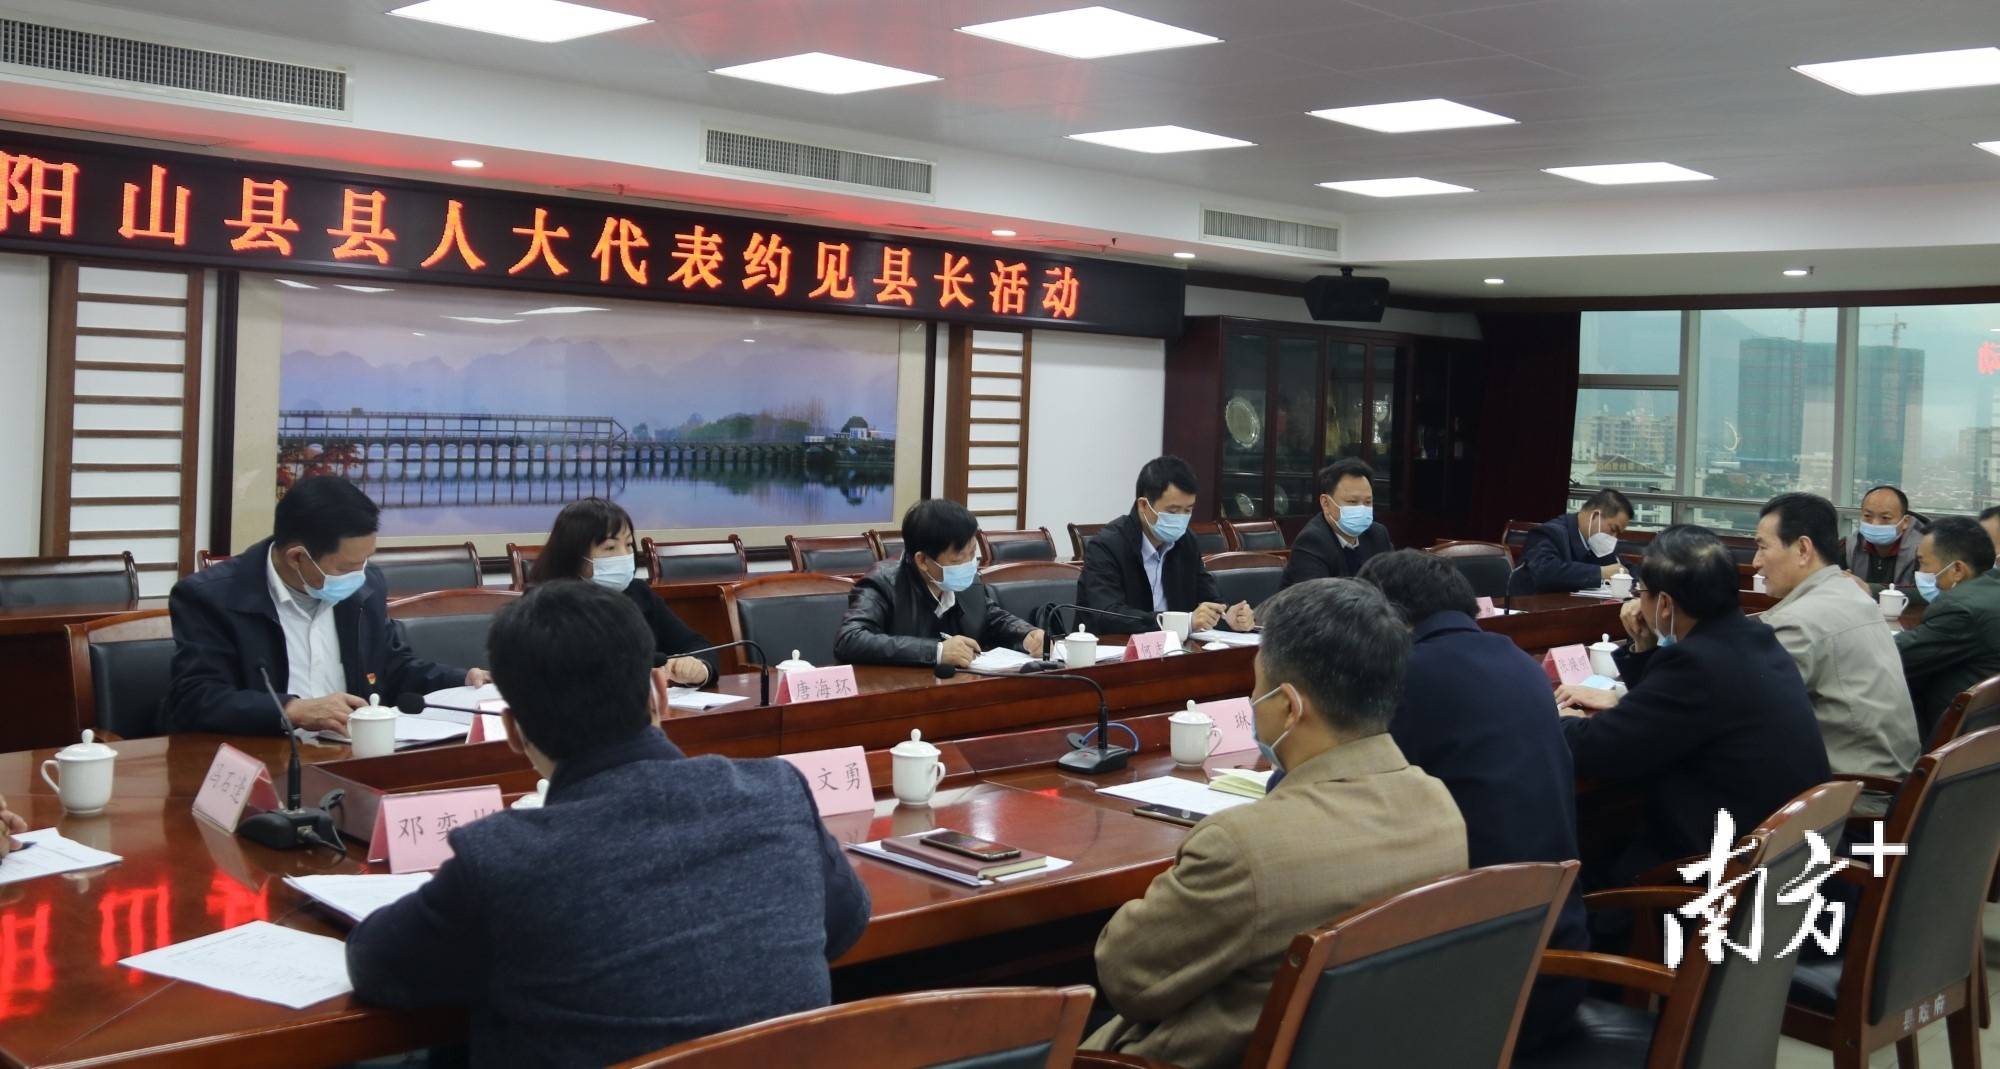 活动中,阳山县副县长林振宇对县公共卫生防控救治能力建设情况进行